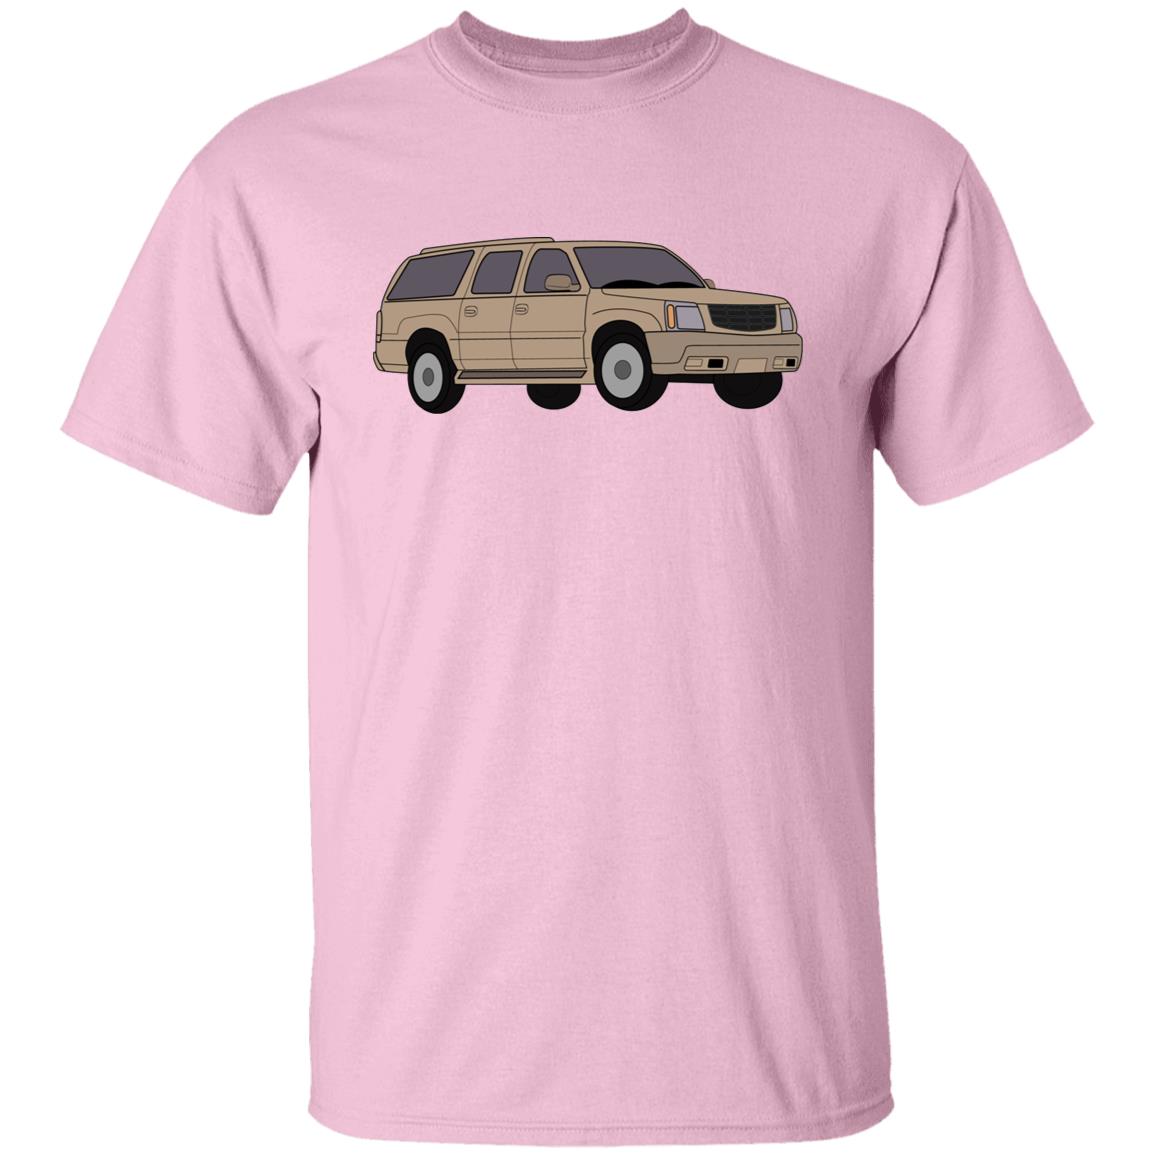 Chevy Cadillac Shirt